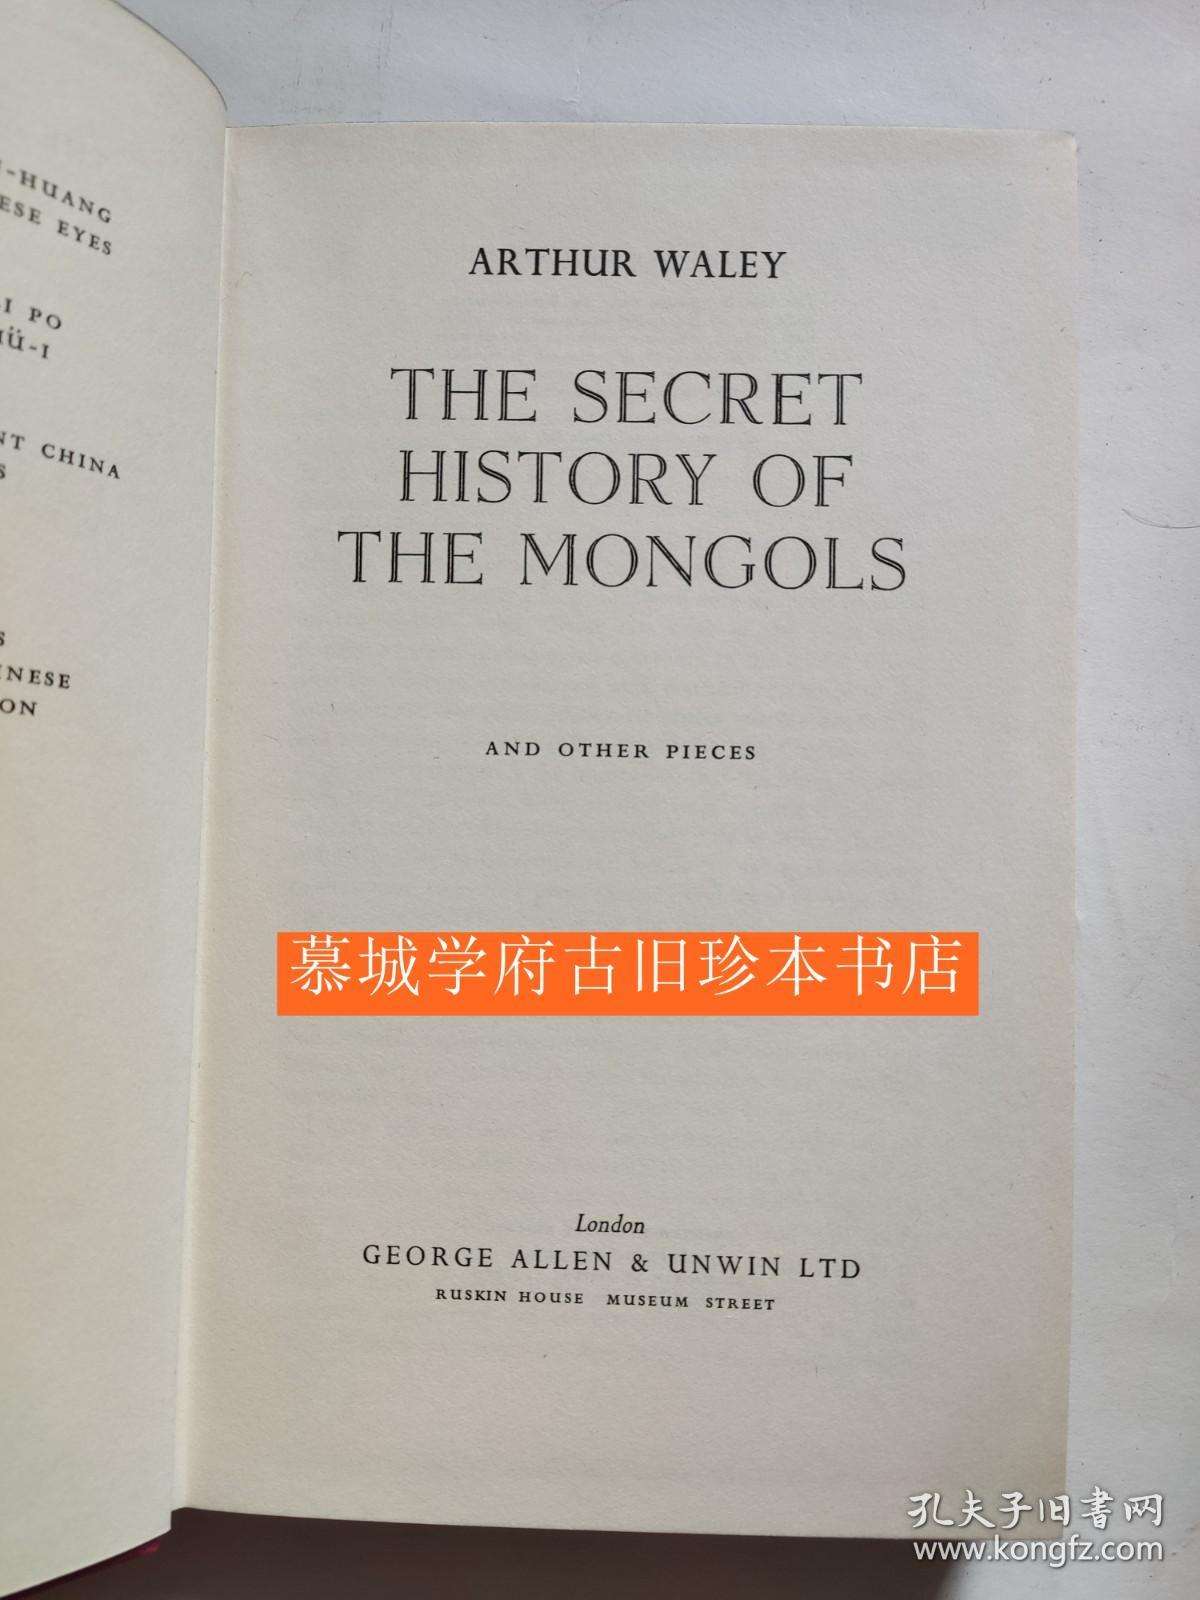 【英译初版】阿瑟·韦利《蒙古秘史》ARTHUR WALEY: THE SECRET HISTORY OF THE MONGOLS AND OTHER PIECES